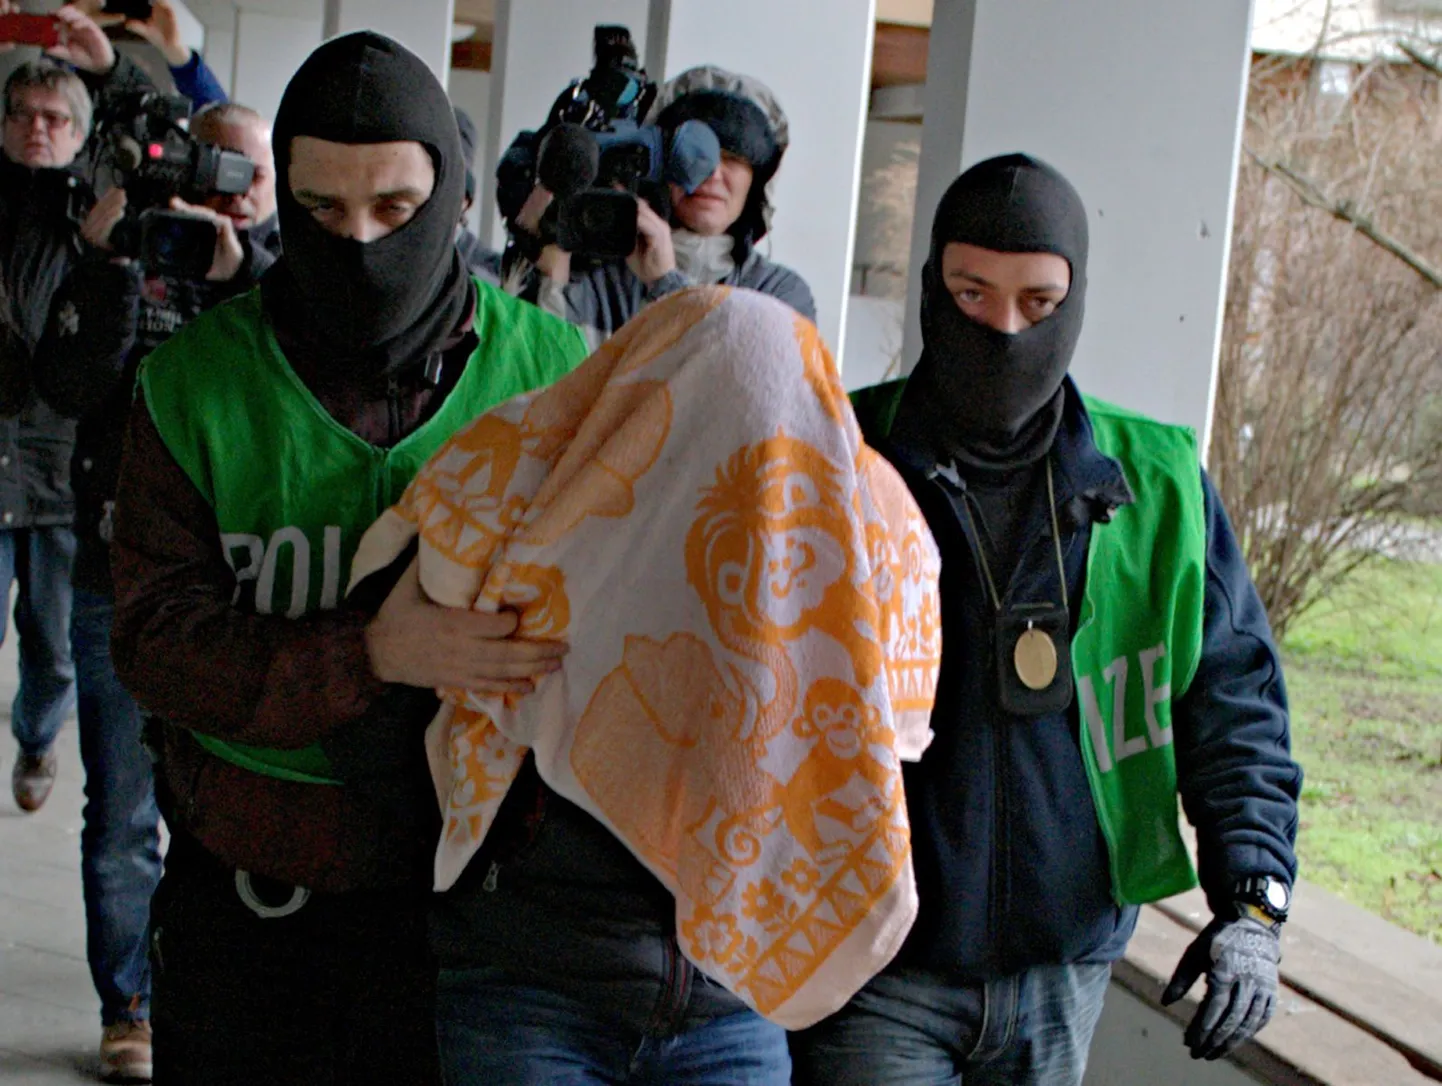 Berliinis arreteeritud alžeerlasest kahtlusalune.